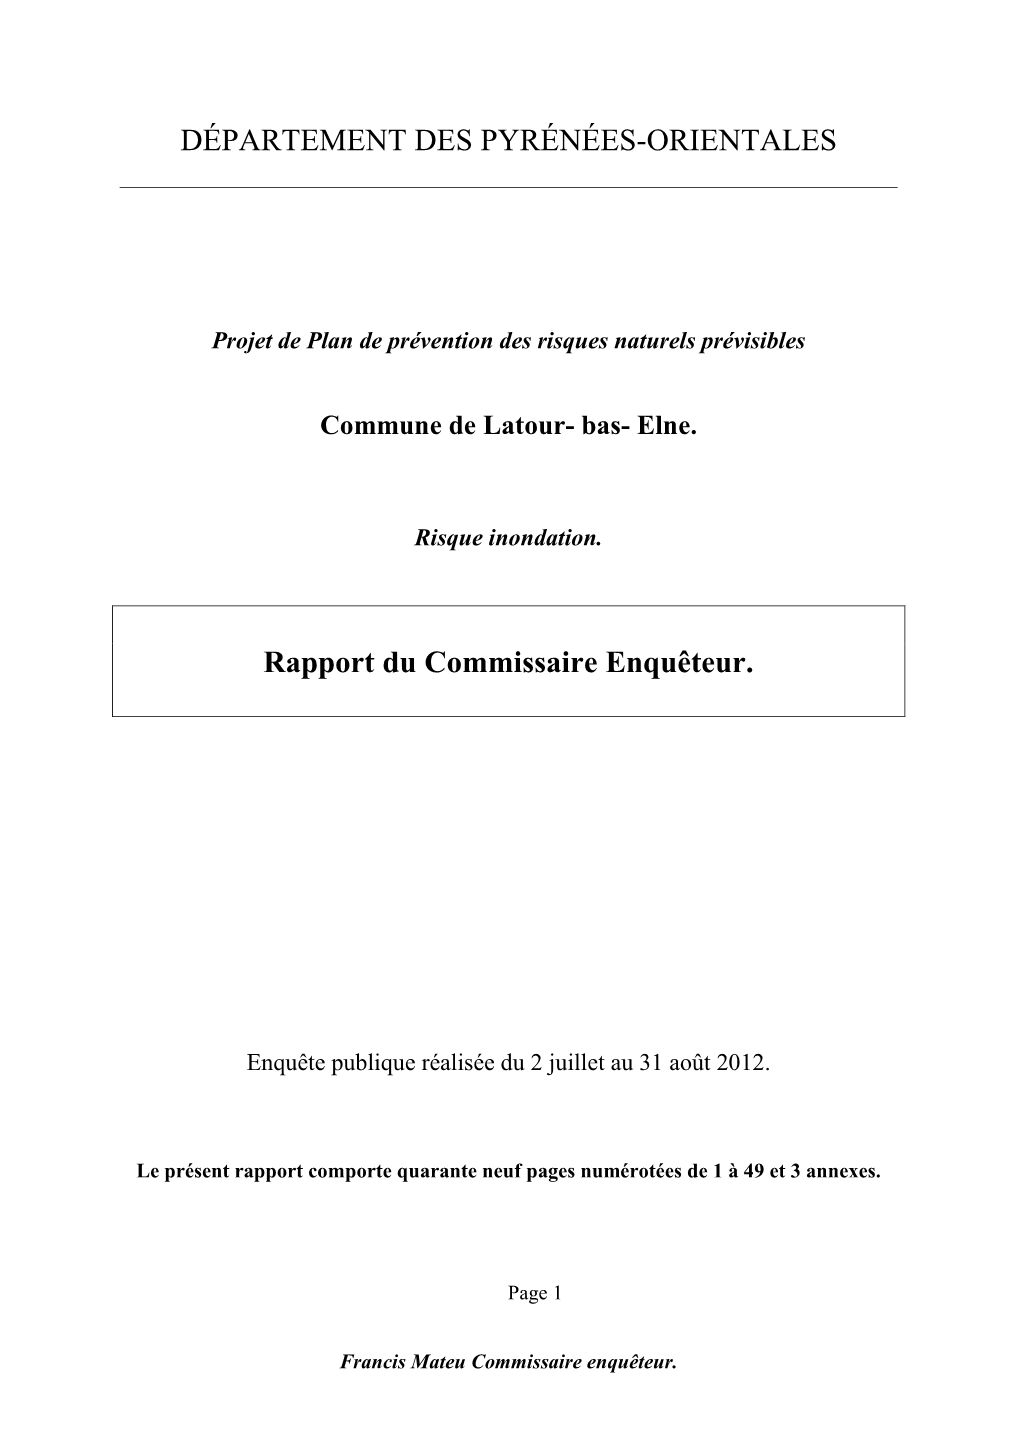 Rapport D'enquête PPRI Latour Bas Elne.Version